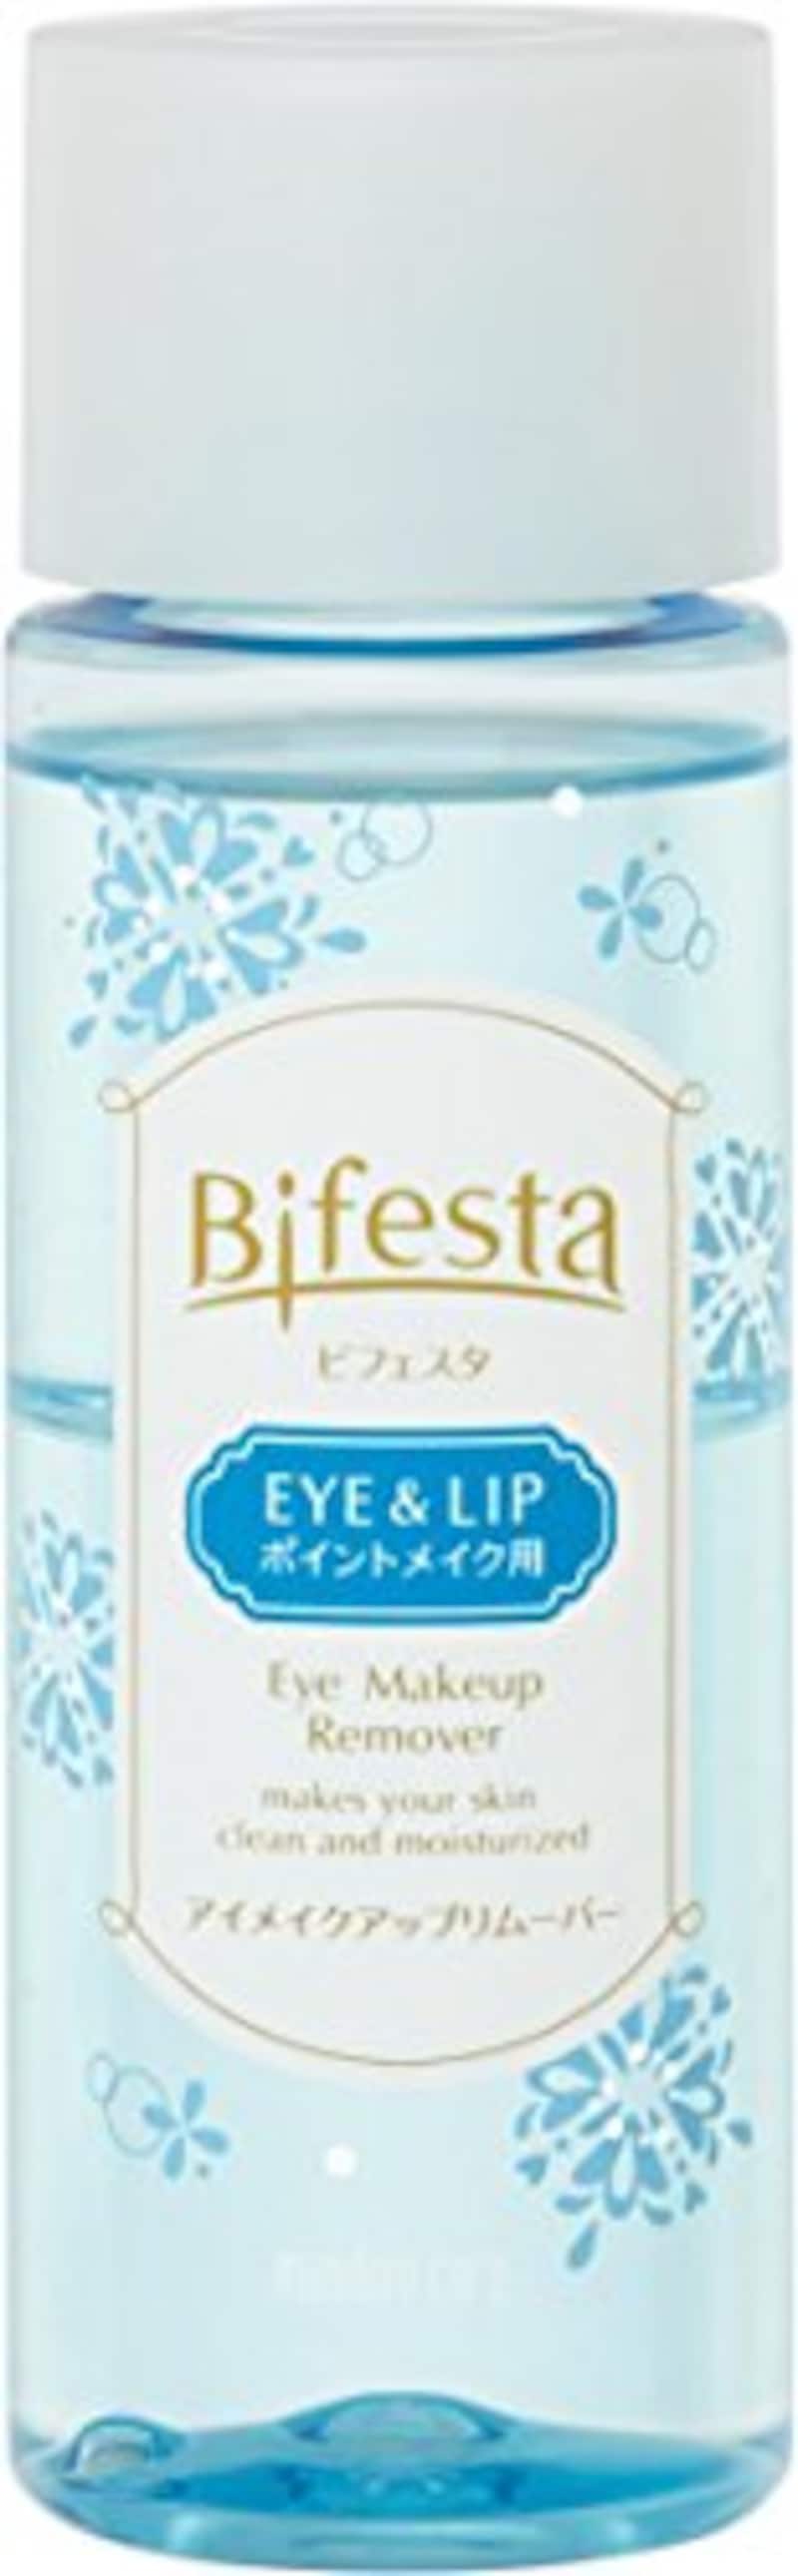 Bifesta（ビフェスタ）,うる落ち水クレンジング アイメイクアップリムーバー,52051